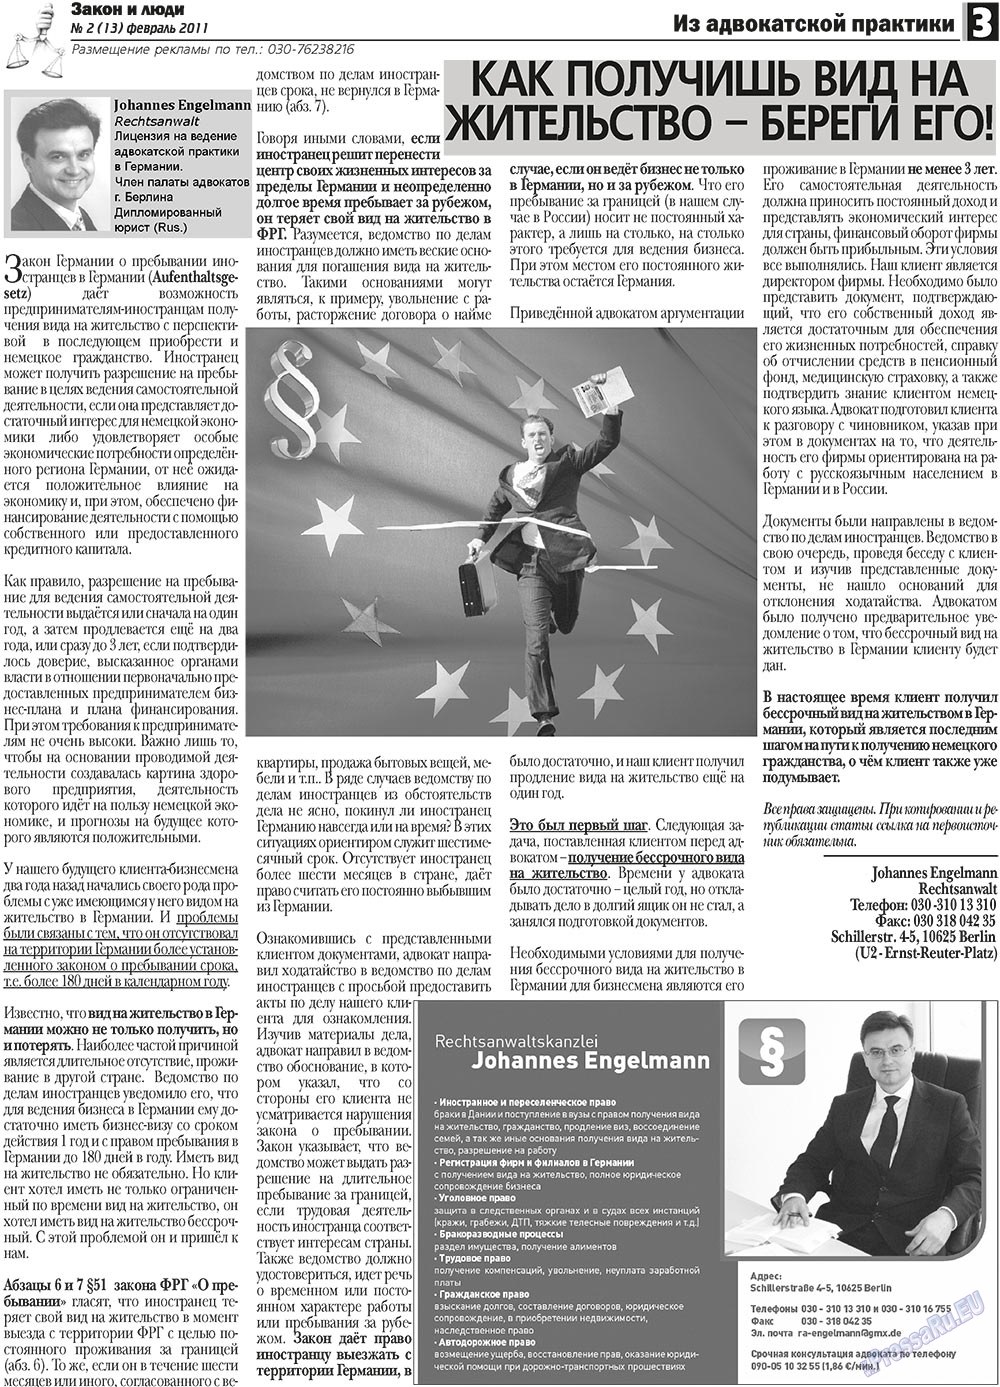 Закон и люди, газета. 2011 №2 стр.3